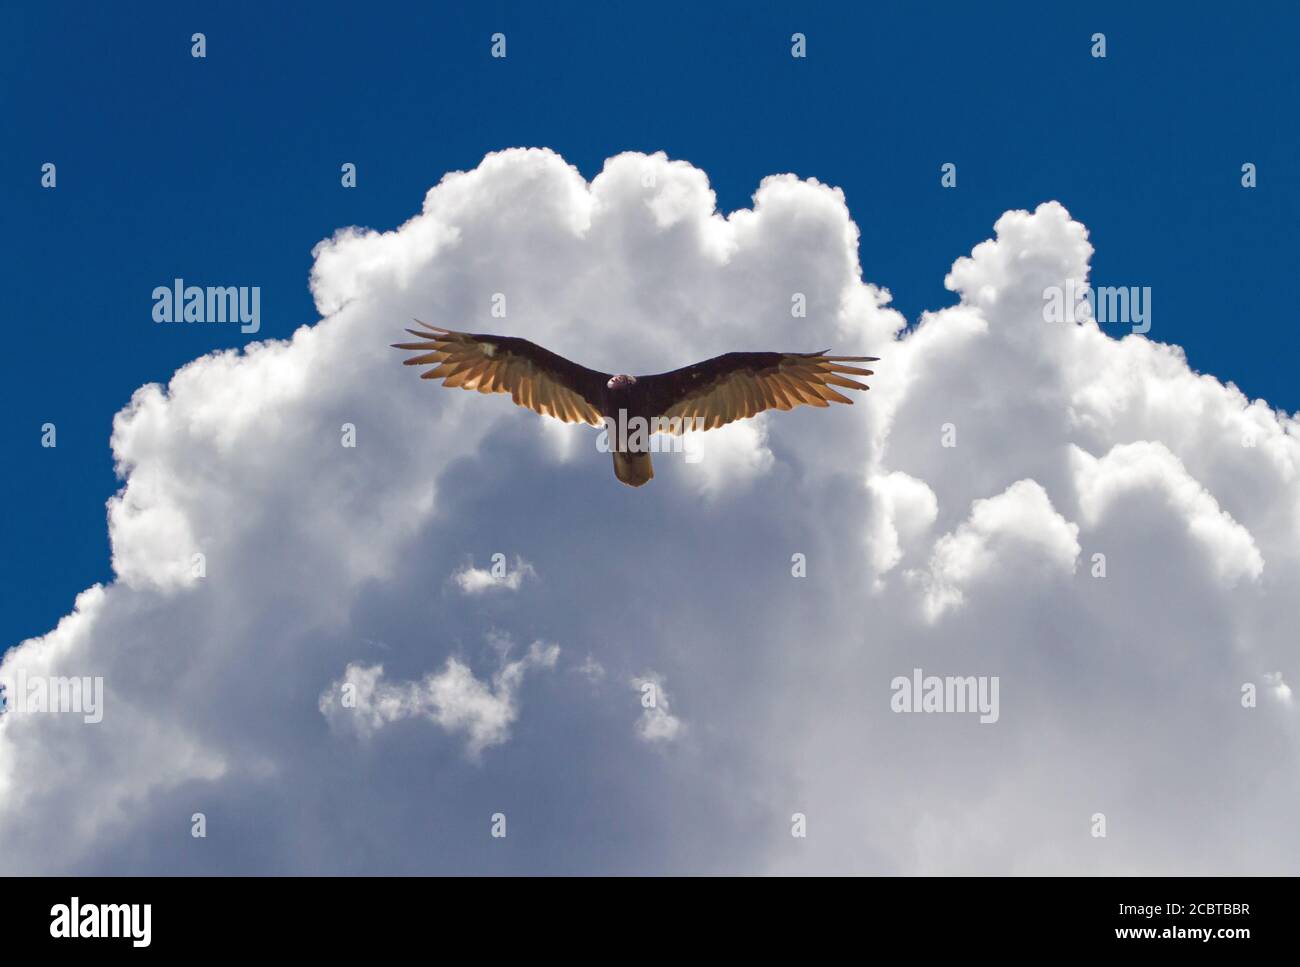 A turkey vulture soars beneath dramatic cumulus clouds in a brilliant blue sky. Stock Photo